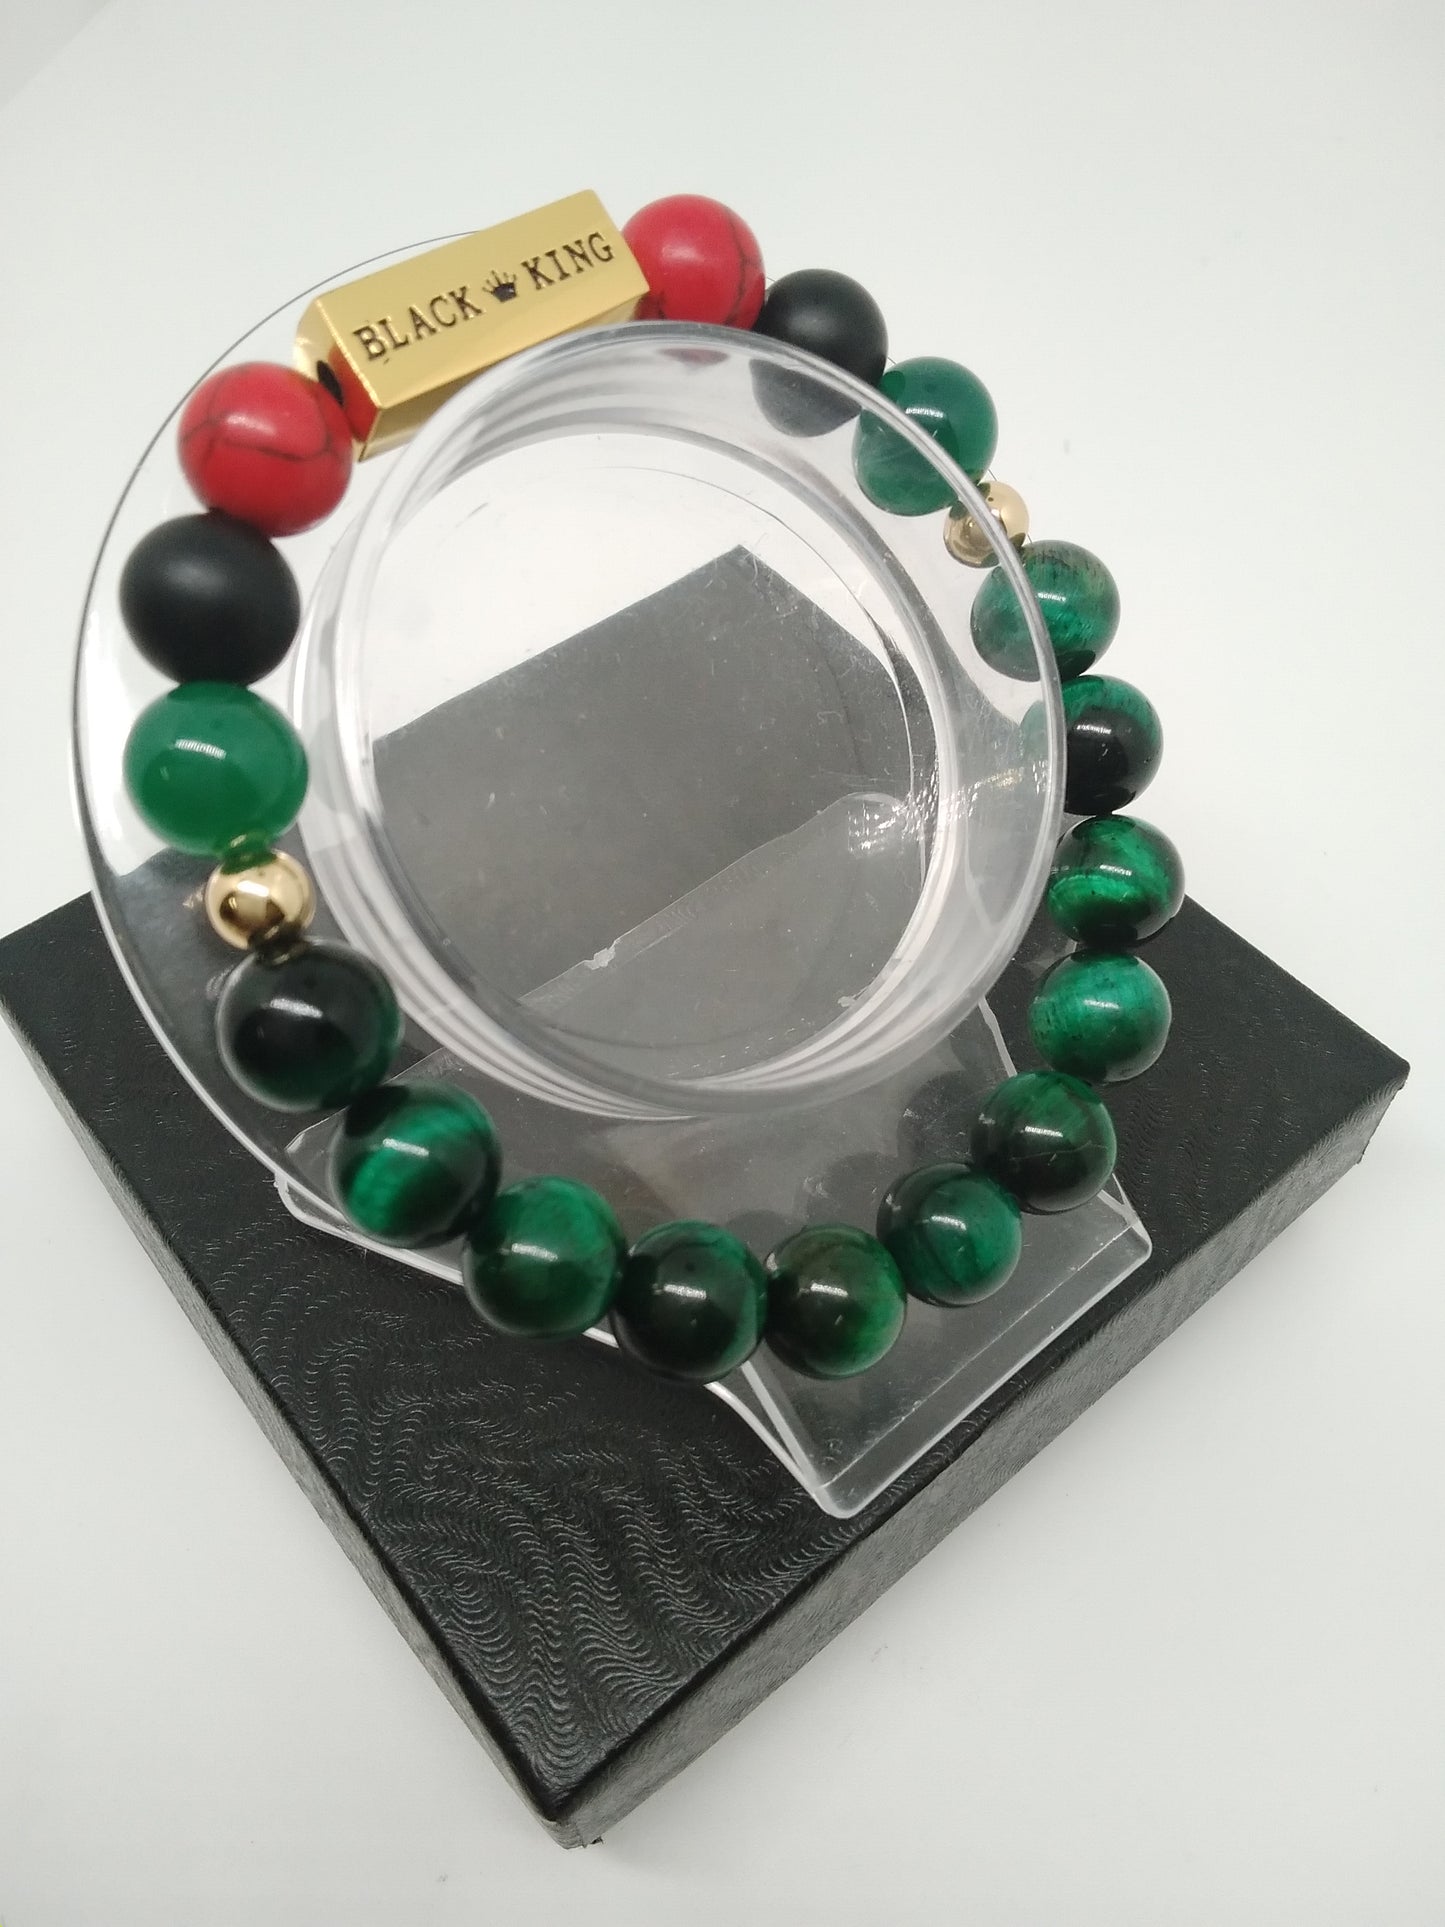 Red, Black and Green "Black King" Bracelet